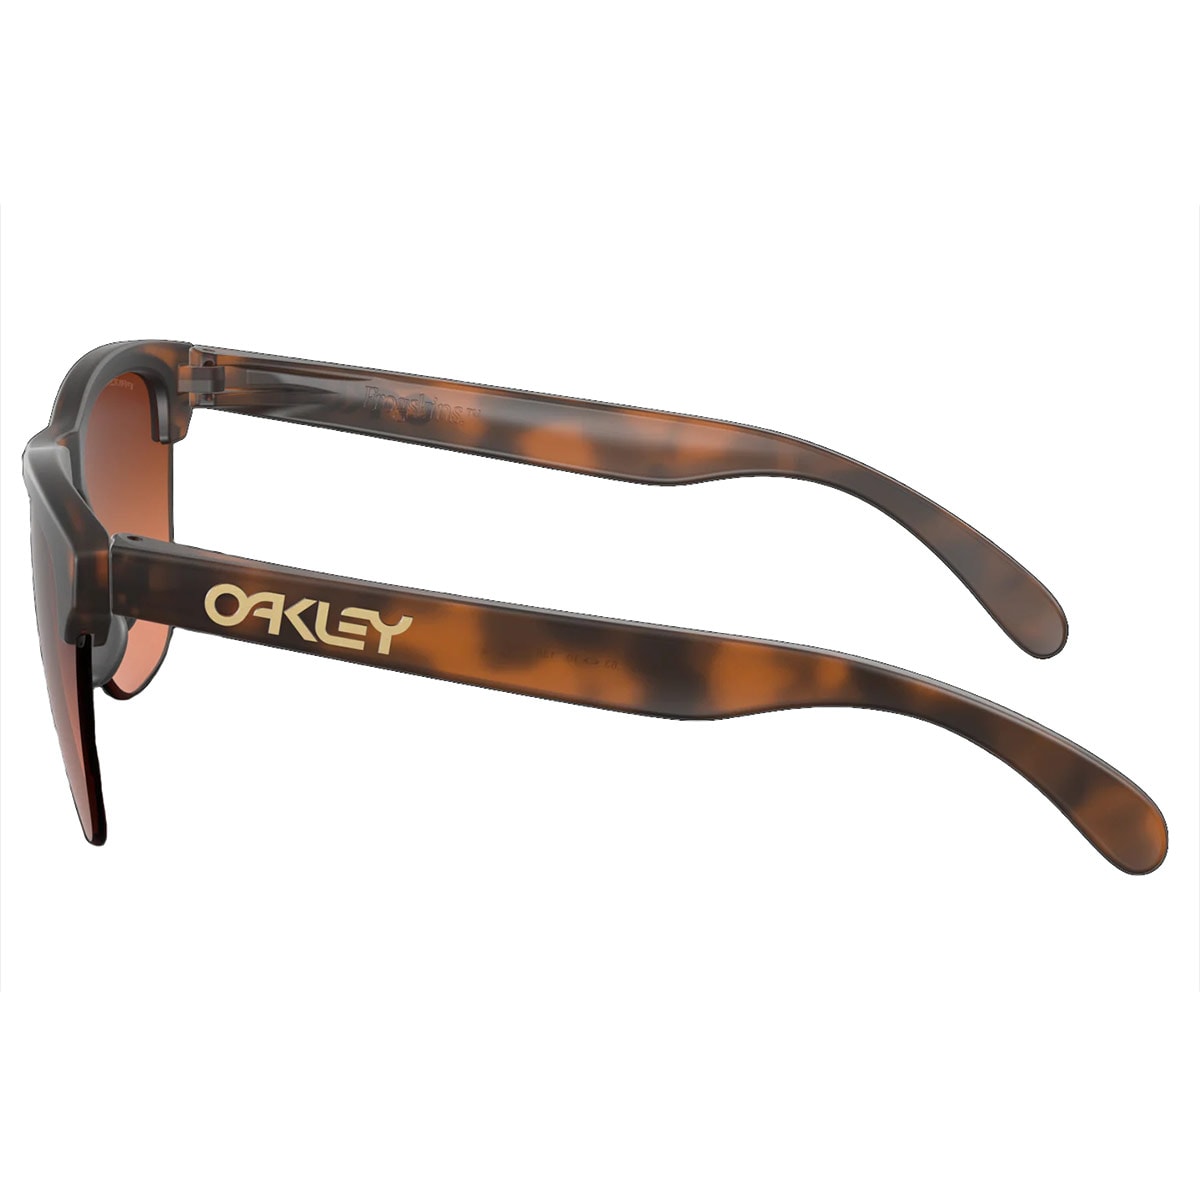 Okulary przeciwsłoneczne Oakley Frogskins Lite Matte Brown Tortoise Prizm Brown Gradient